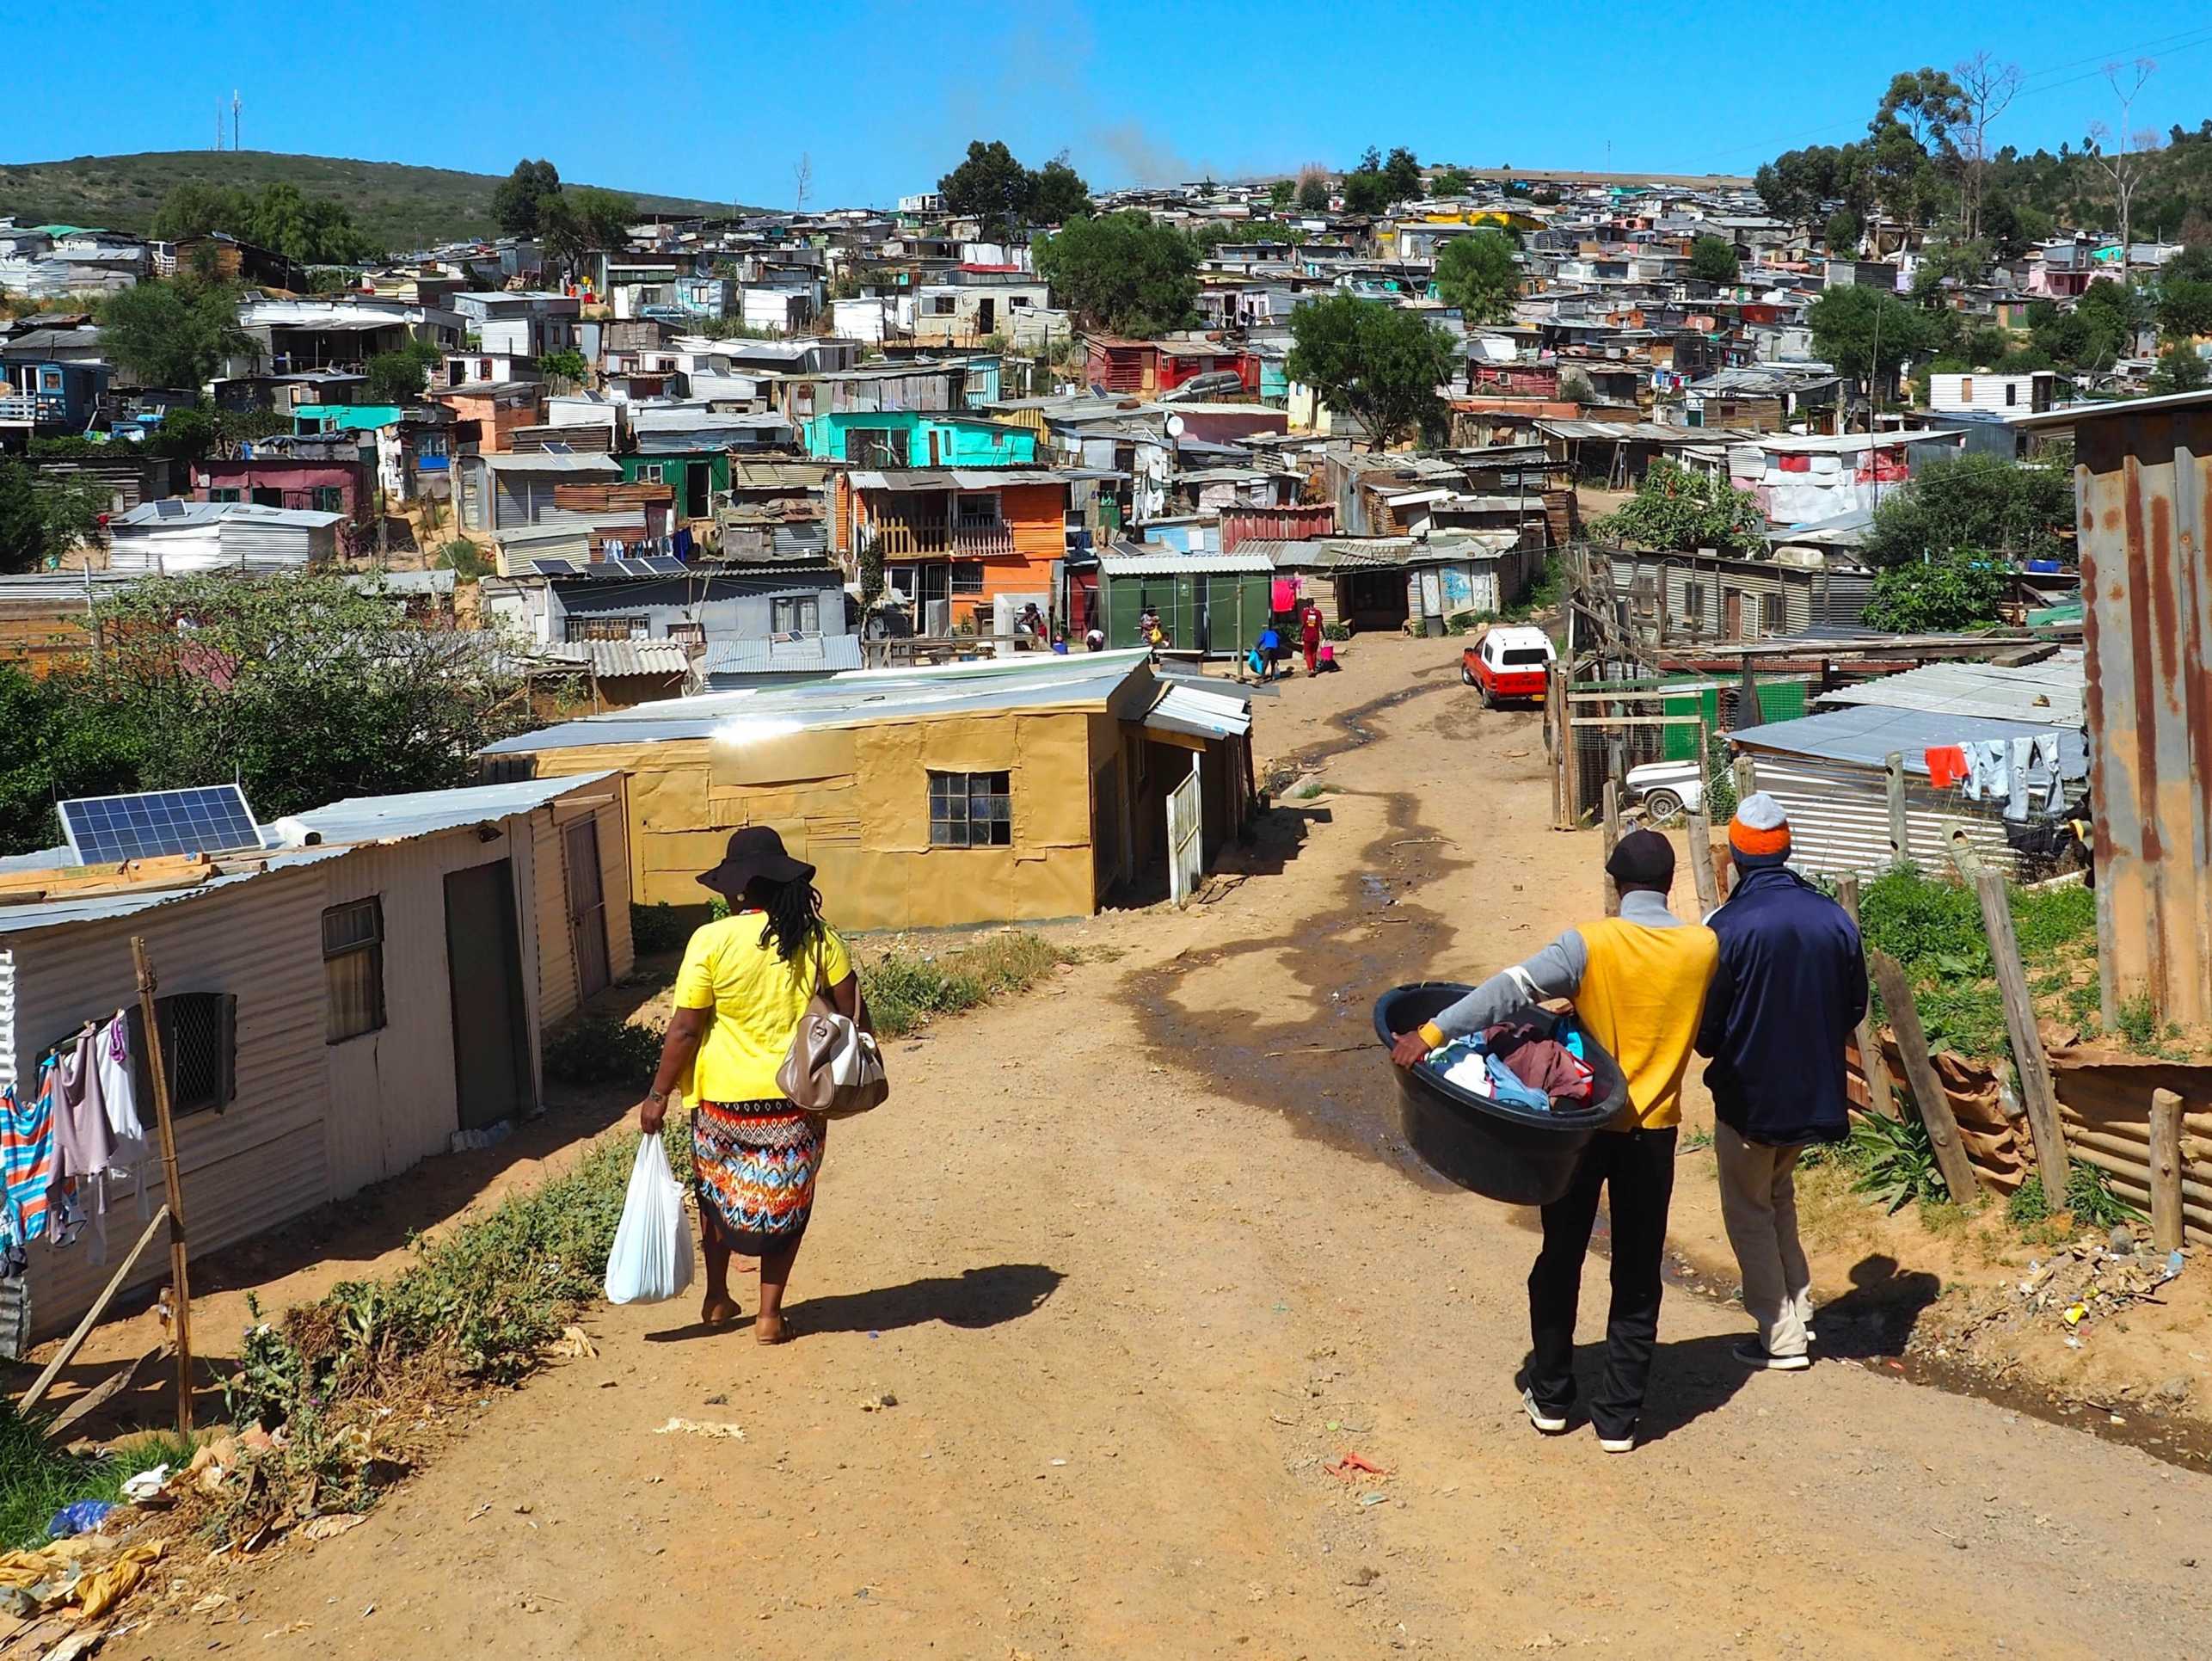 People walking in informal settlement